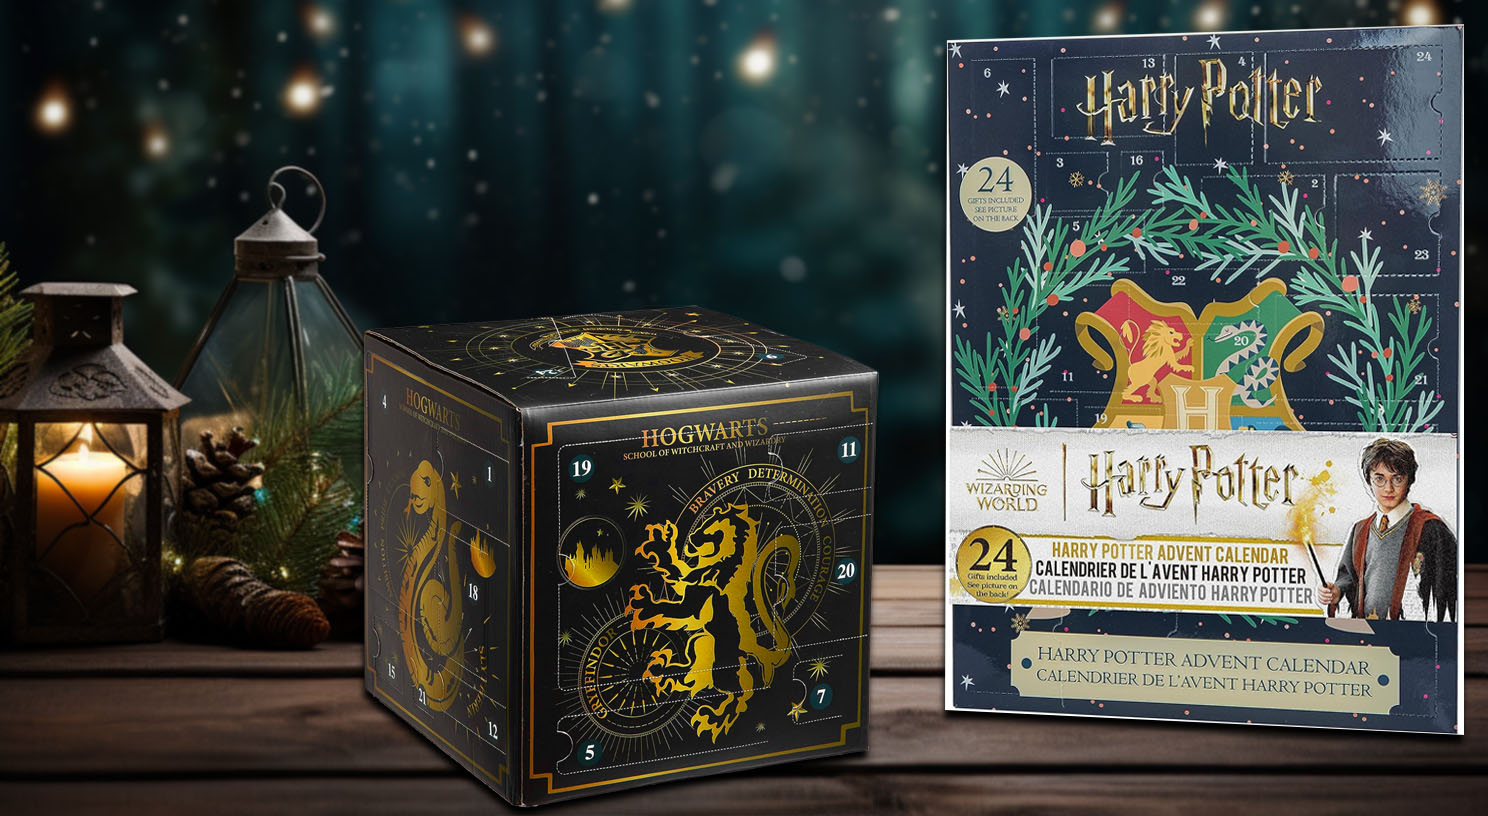 Harry Potter Adventskalender: voller Magie, Nostalgie und exklusiven Überraschungen, die Fans in die fesselnde Welt von Hogwarts entführen.